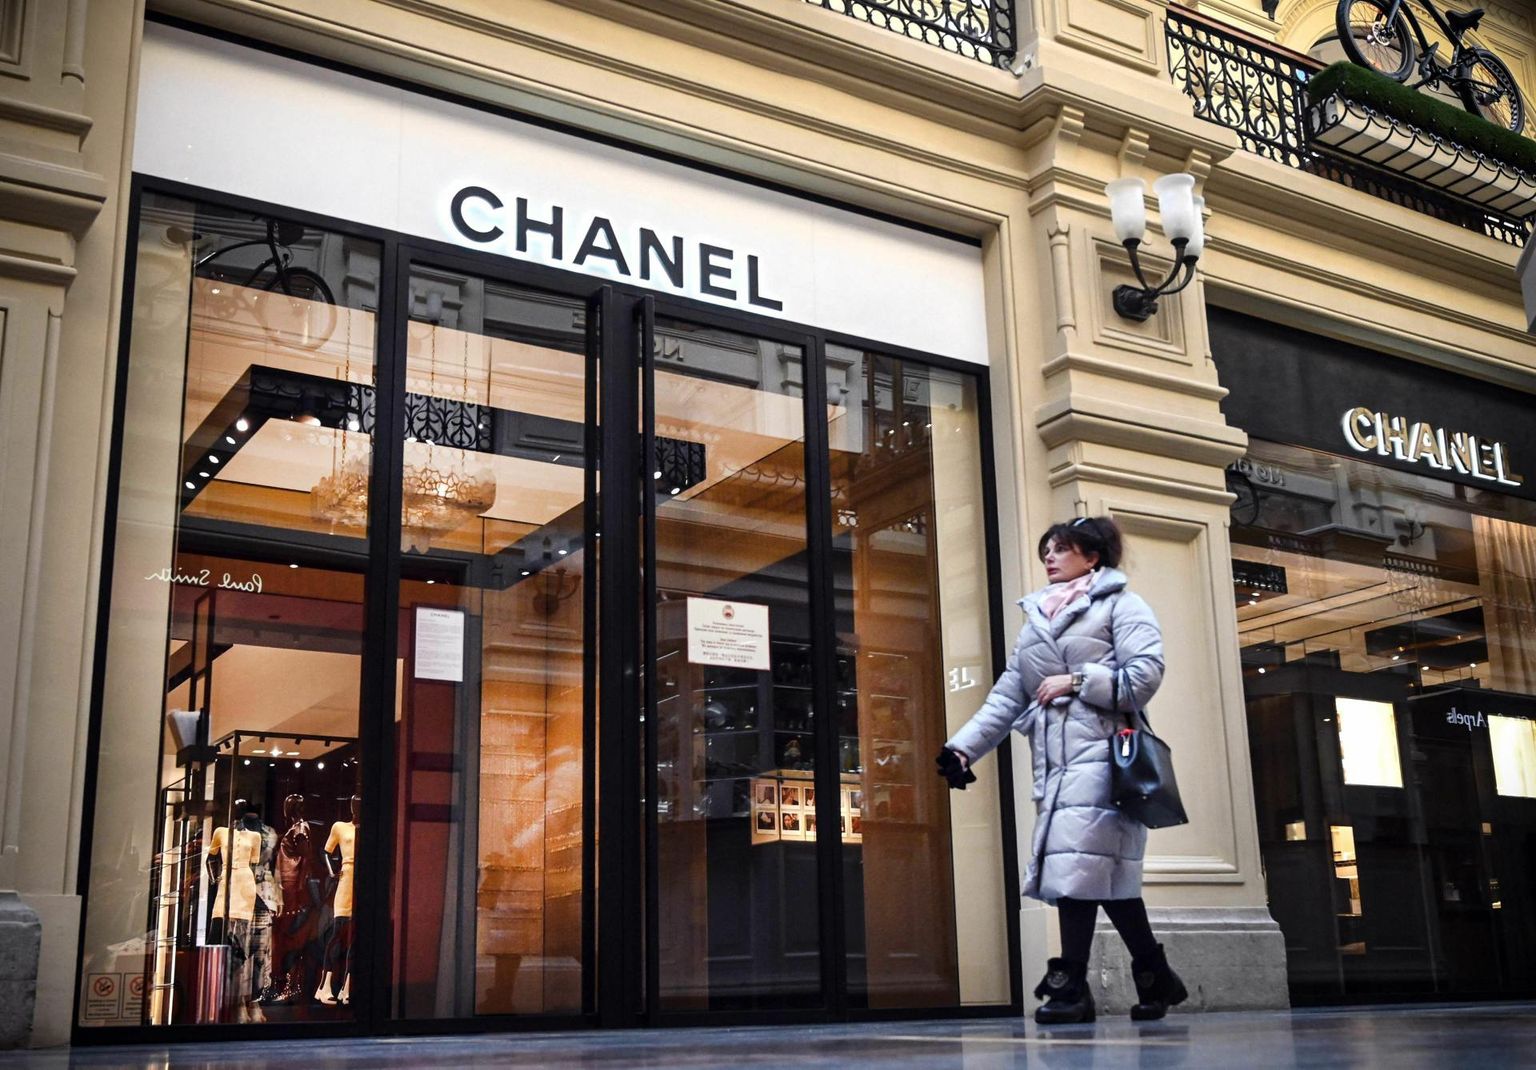 Naine kõnnib mööda Chaneli poest Moskvas, mis on suletud alates 2022. aasta märtsist. Lääne luksuslik elulaad jääb aina enam venelastele kättesaamatuks.